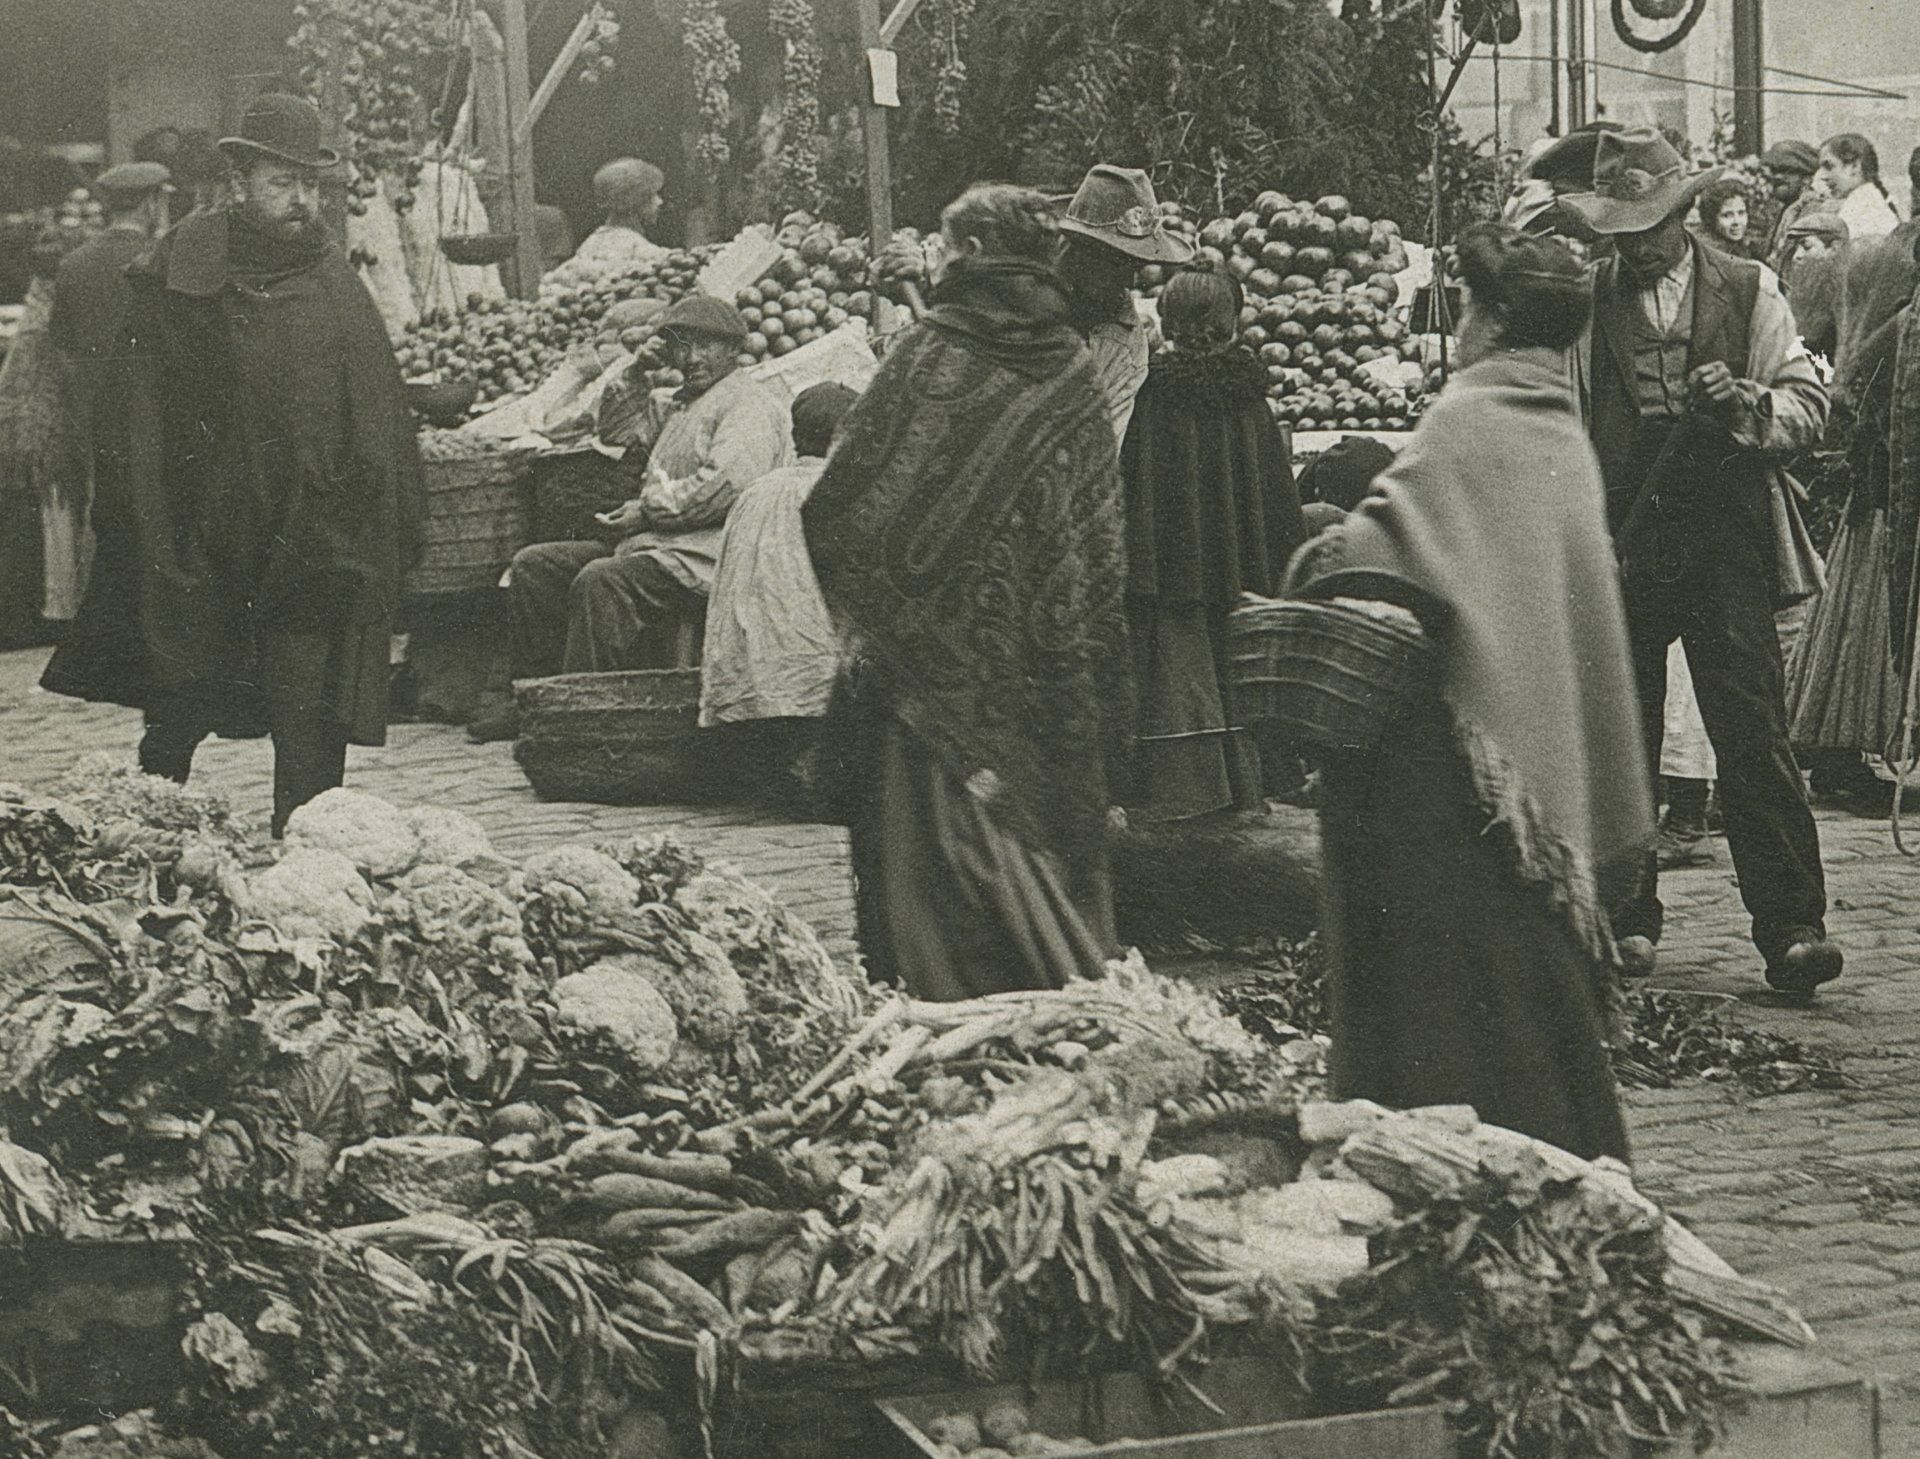 Puestos en el mercado de San Ildefonso (1910)